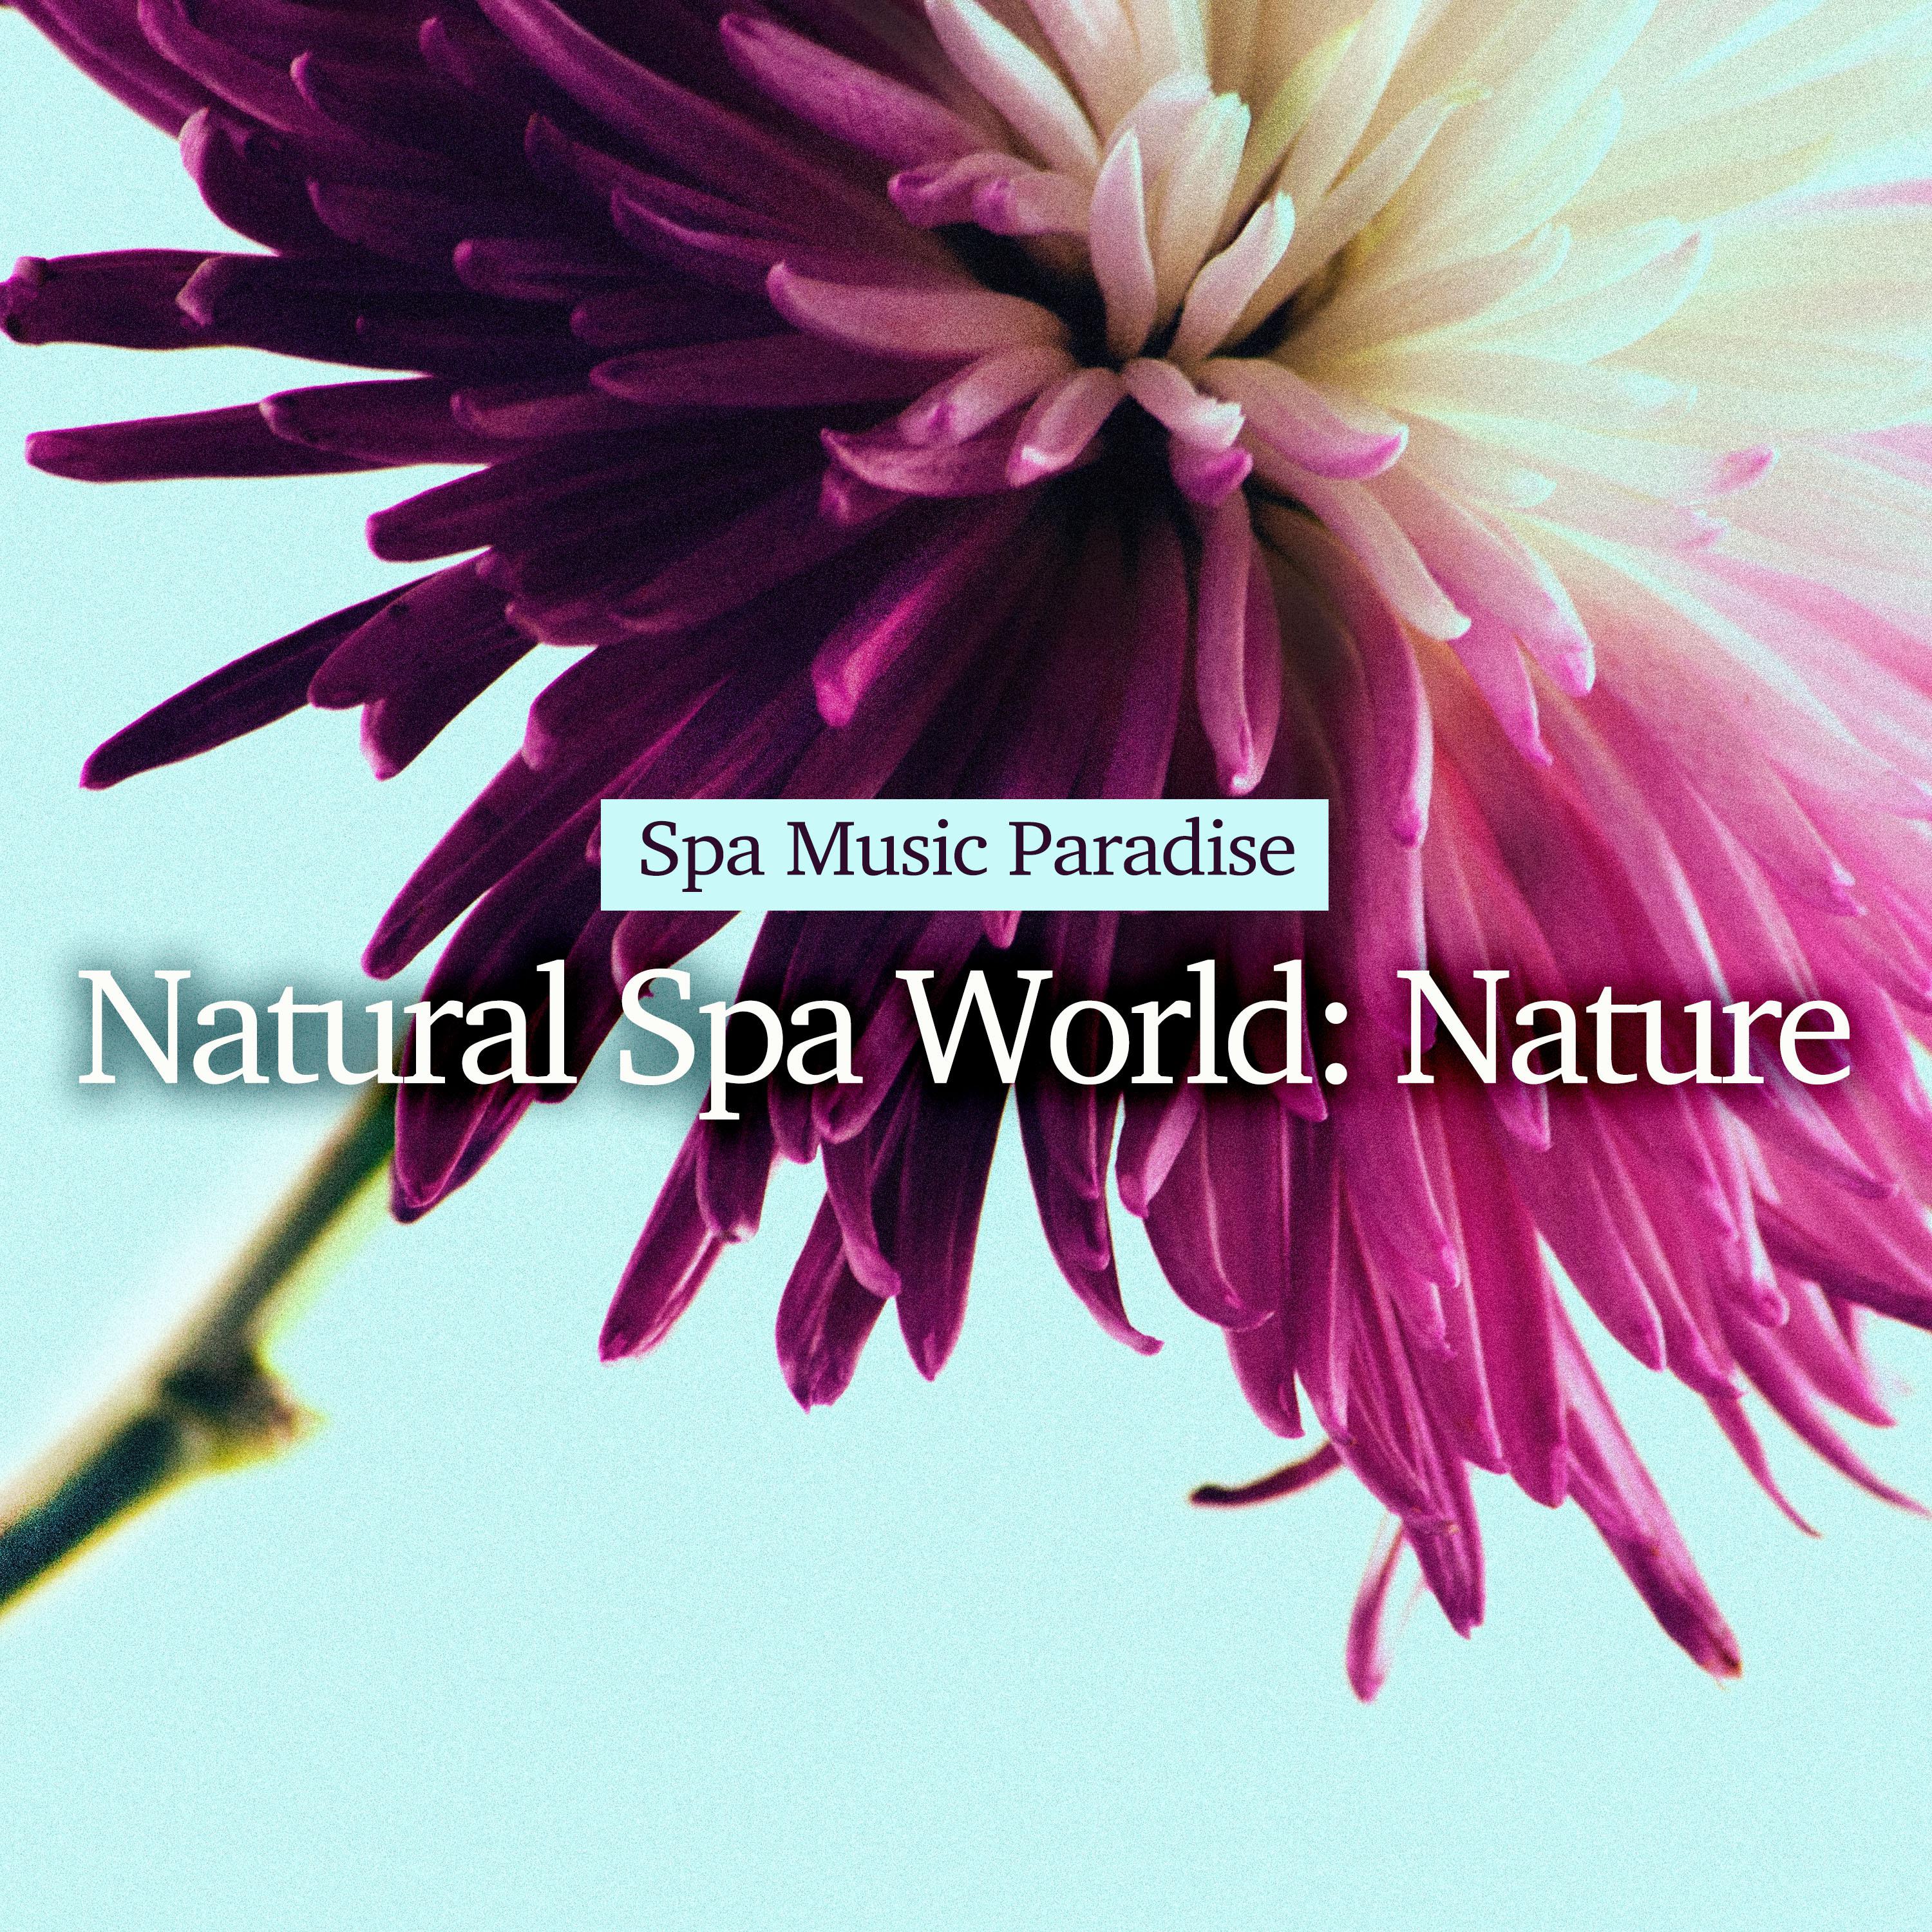 Natural Spa World: Nature